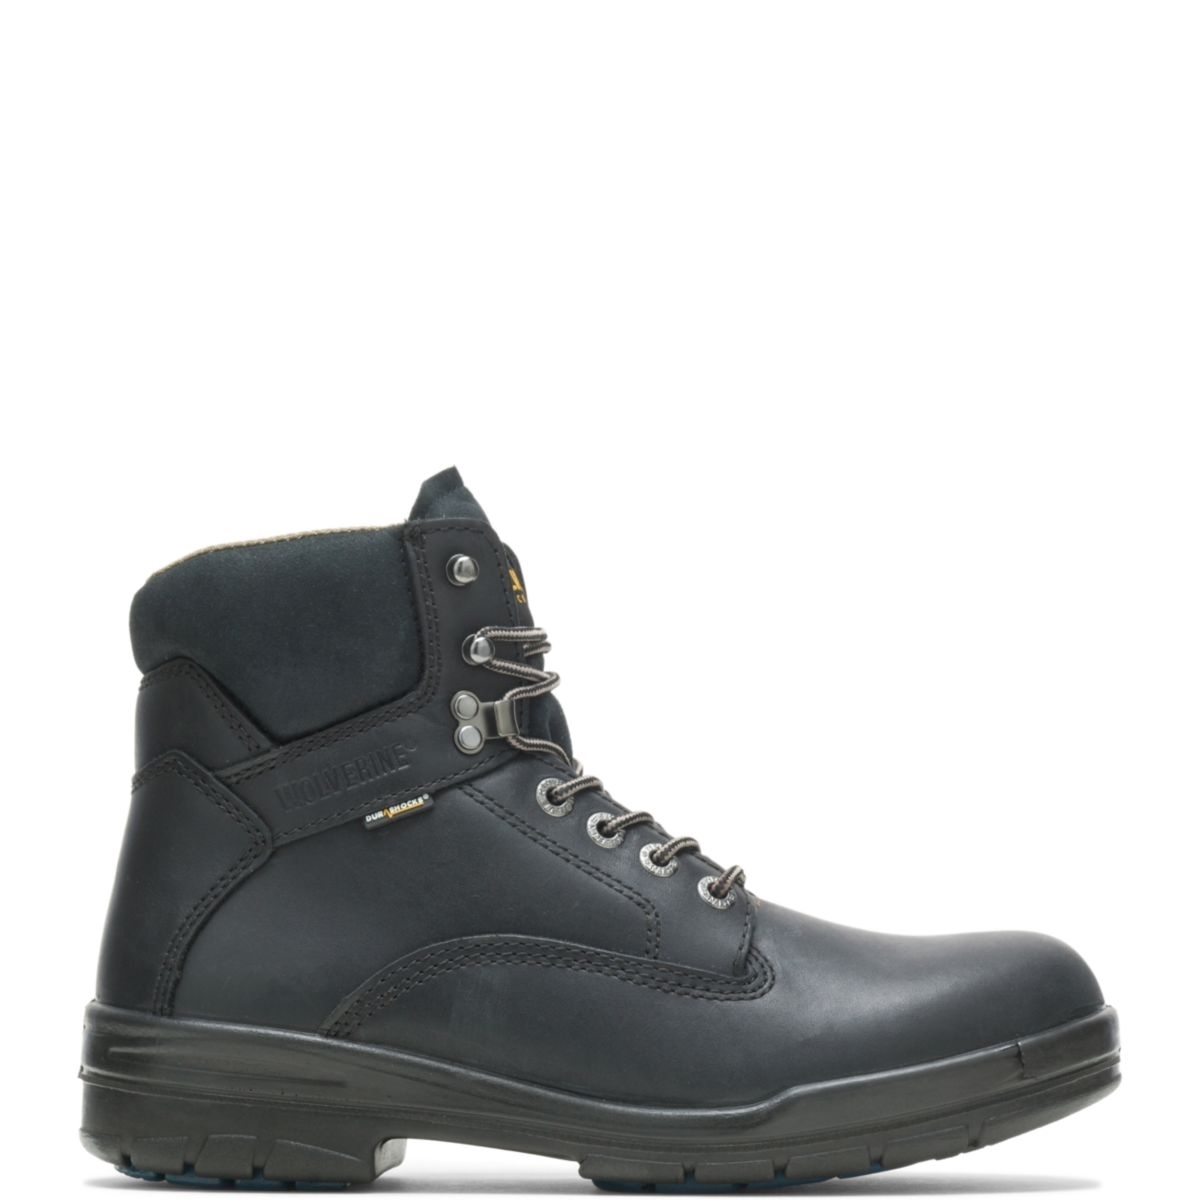 WOLVERINE Men's 6 DuraShocksÂ® Slip Resistant Direct-Attached Lined Soft Toe Work Boot Black - W03123 14 WIDE BLACK - BLACK, 11